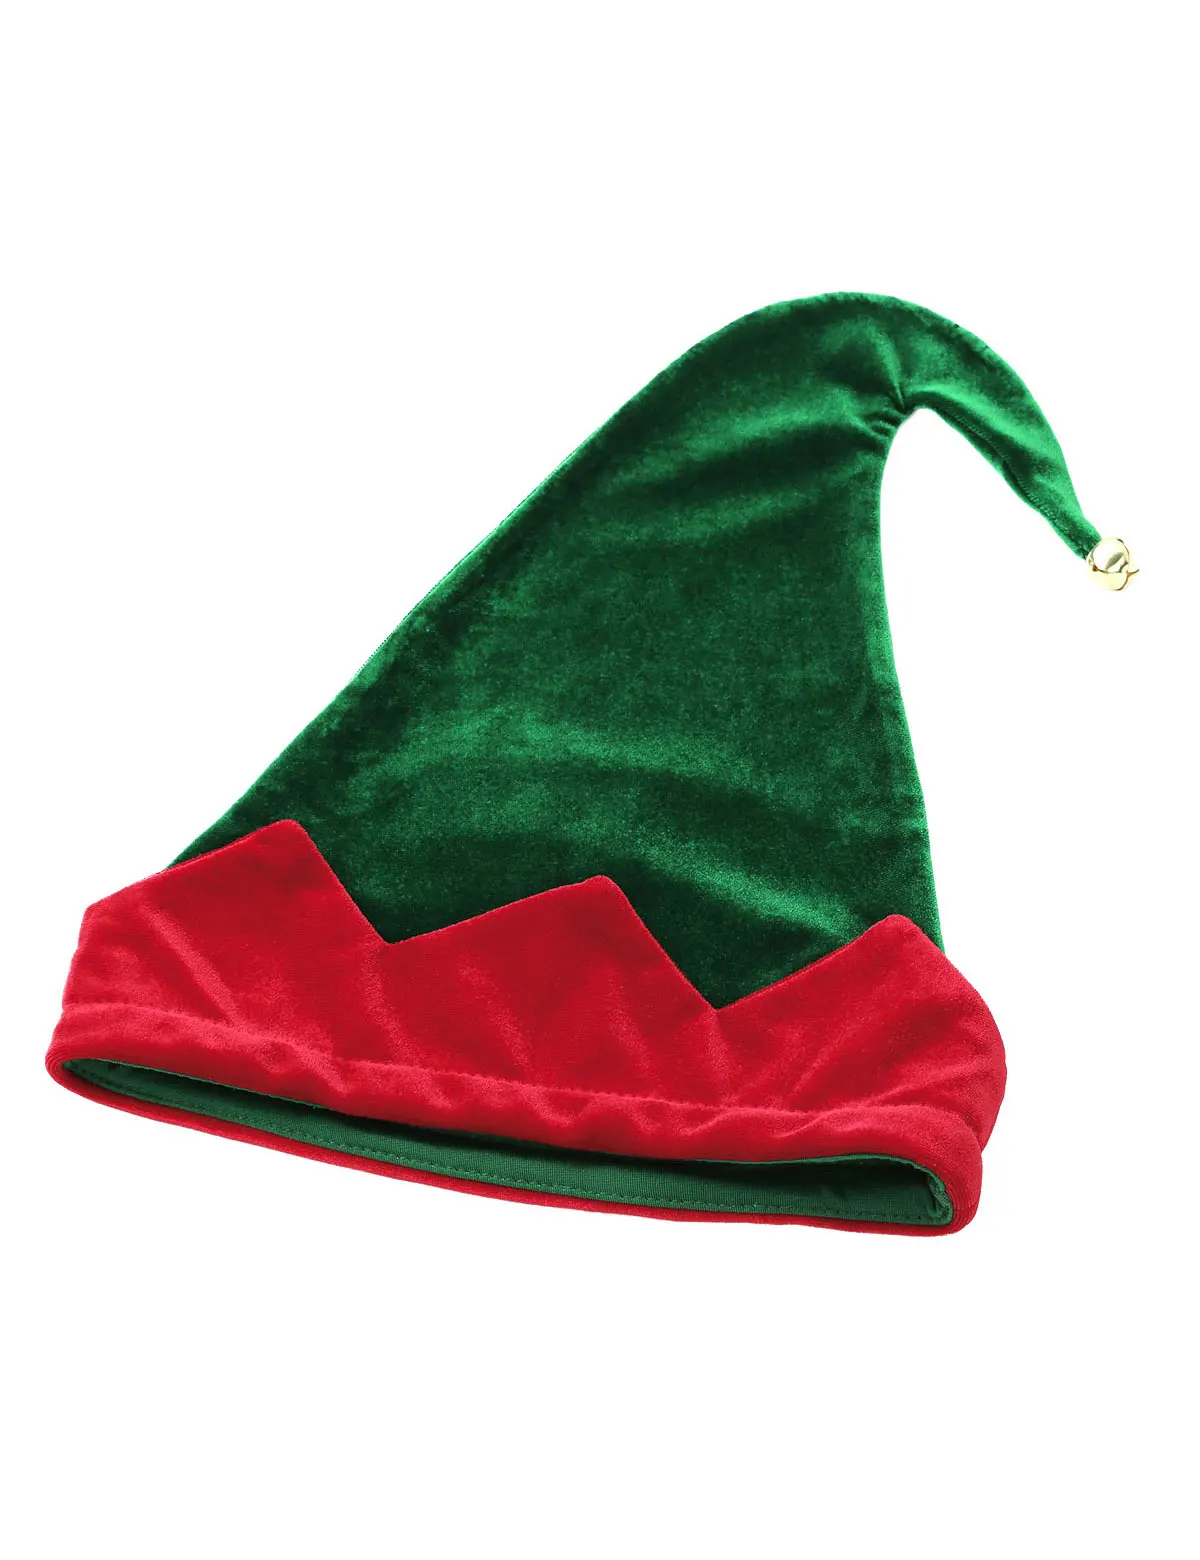 DPOIS для взрослых мужчин Рождество Праздник Набор Санта Клаус Косплей Костюм Необычные Вечерние Rave платье эластичный пояс боксеры шорты и шляпа